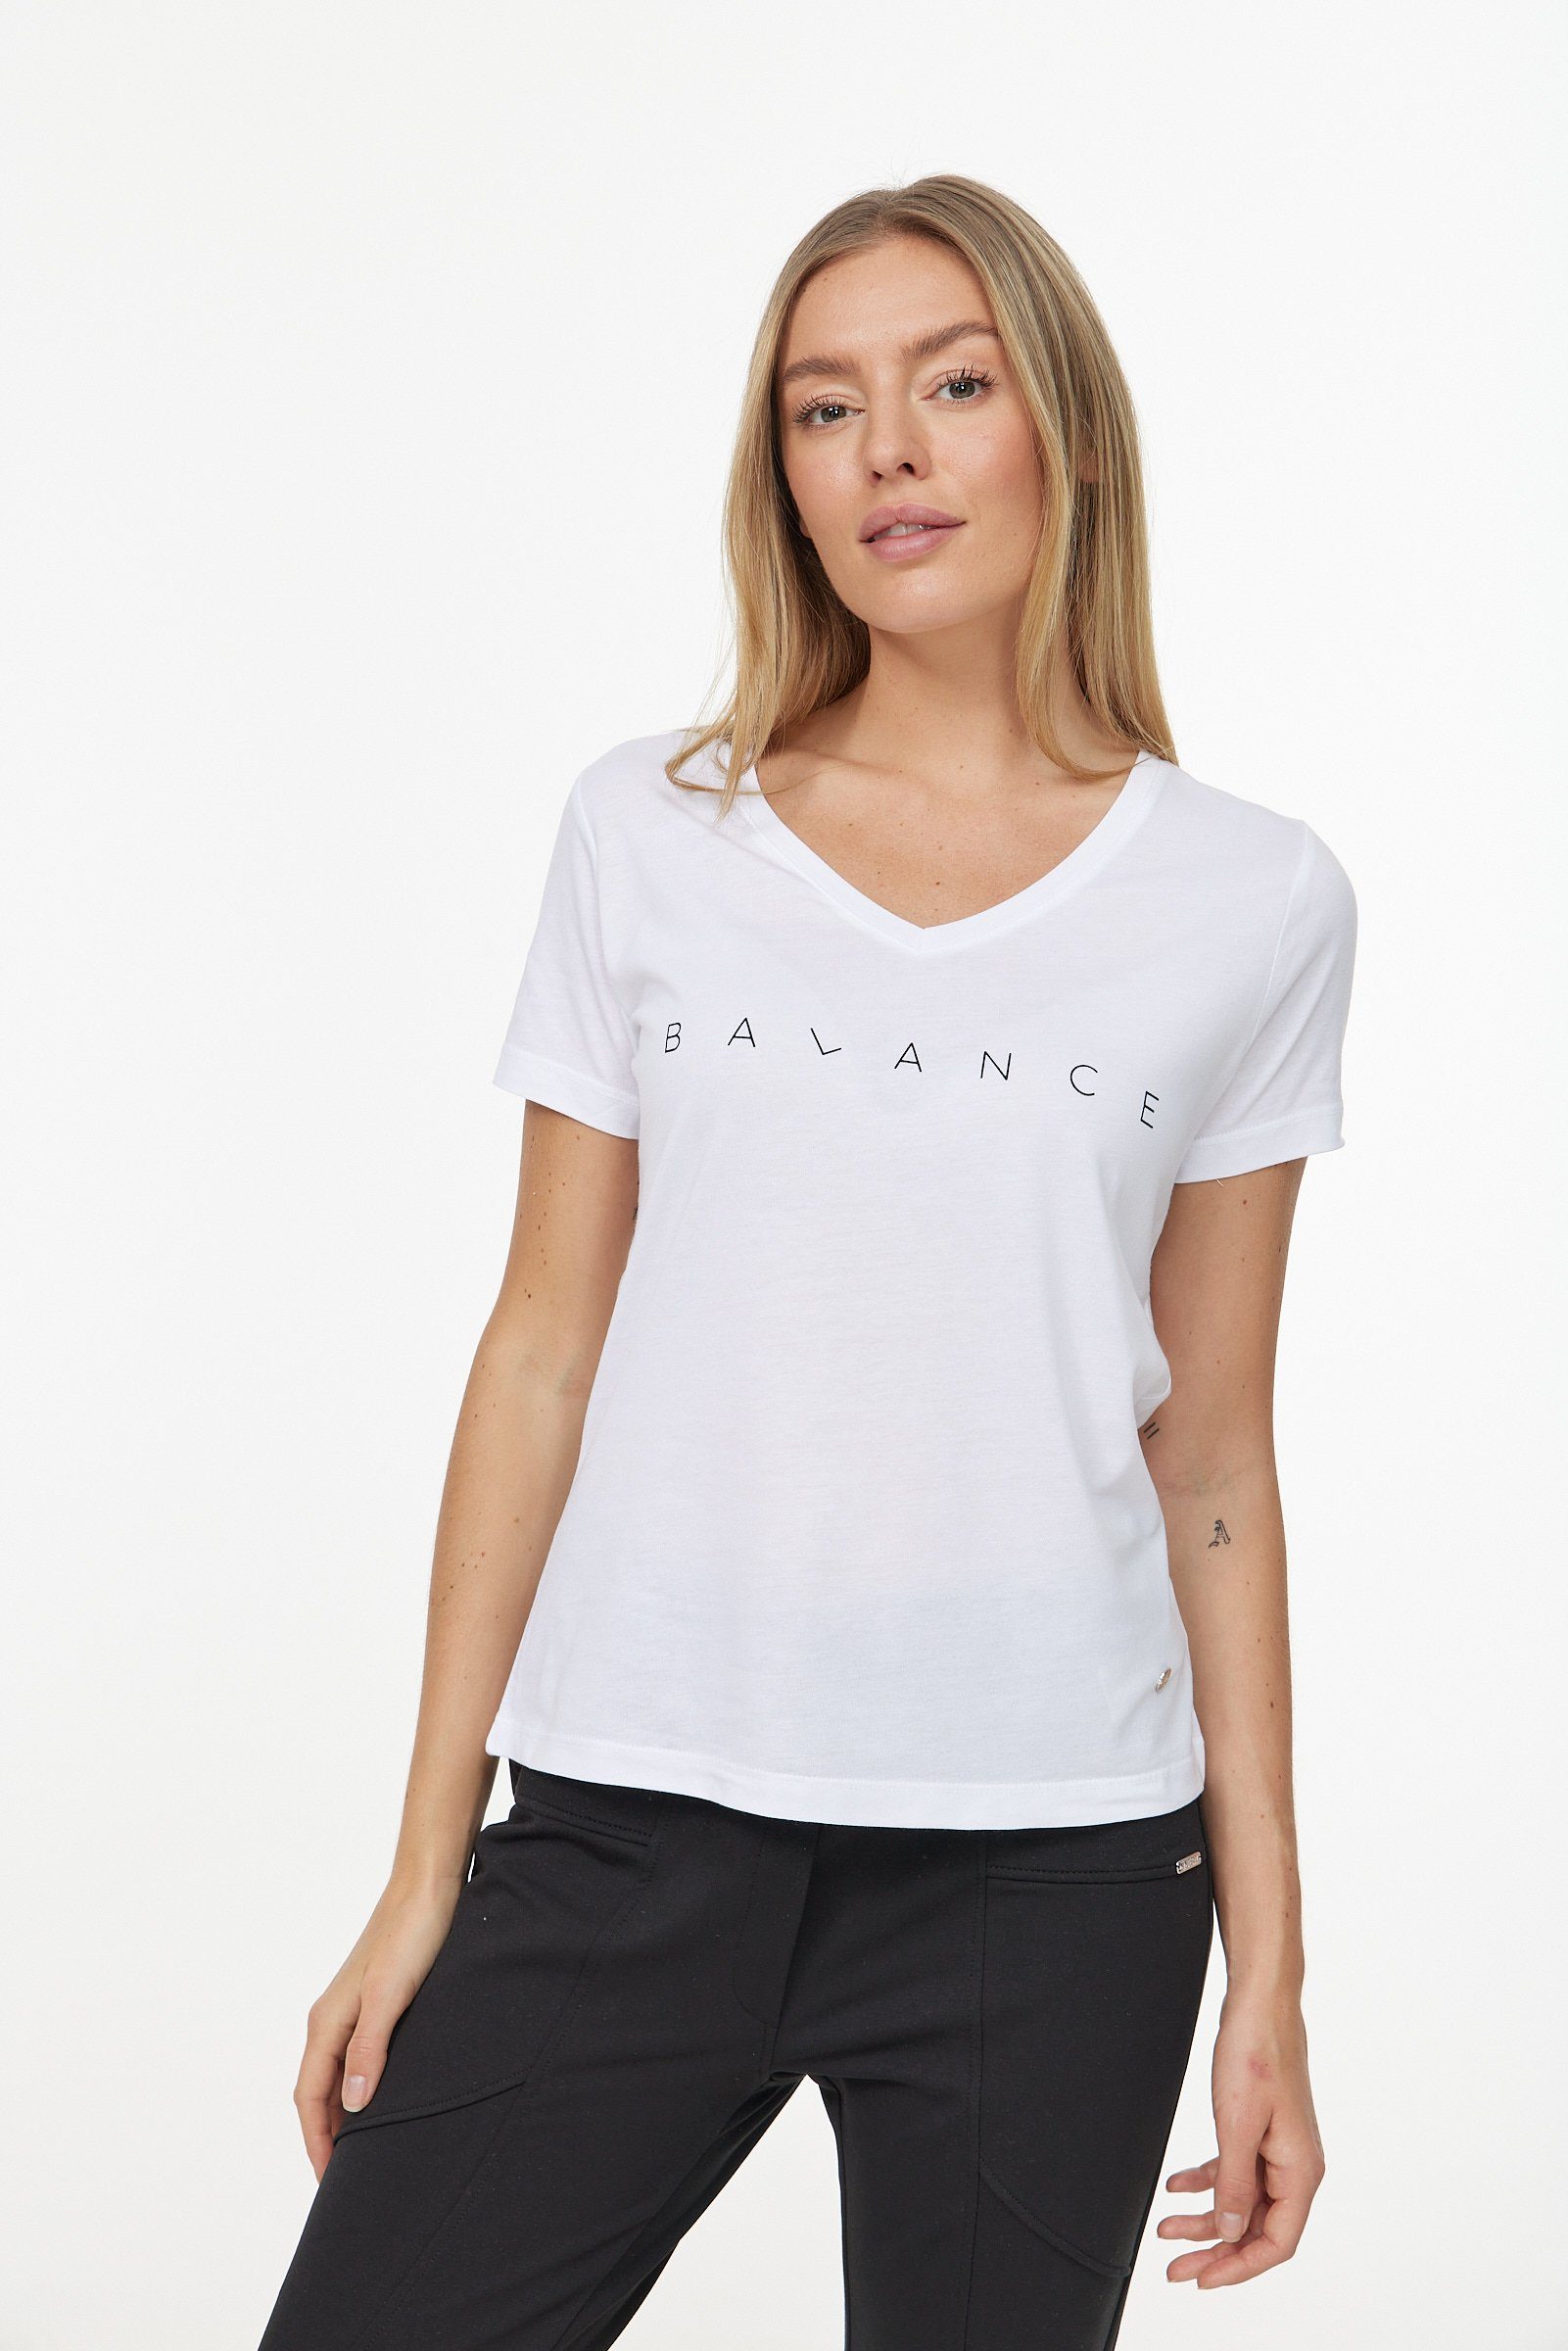 Decay T-Shirt in weiß-schwarz Design schlichtem